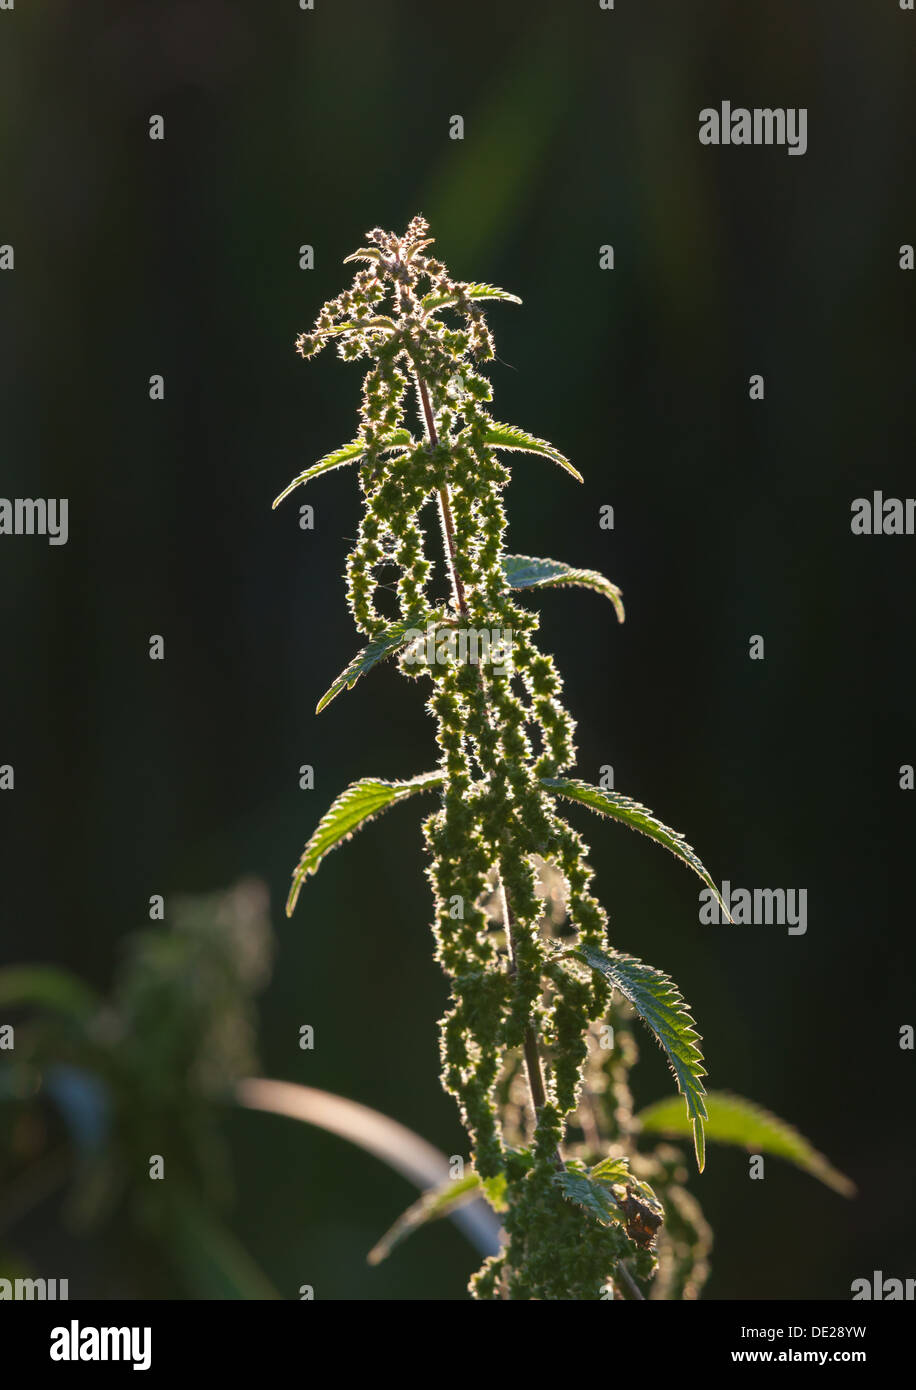 Stinging nettle plant Stock Photo